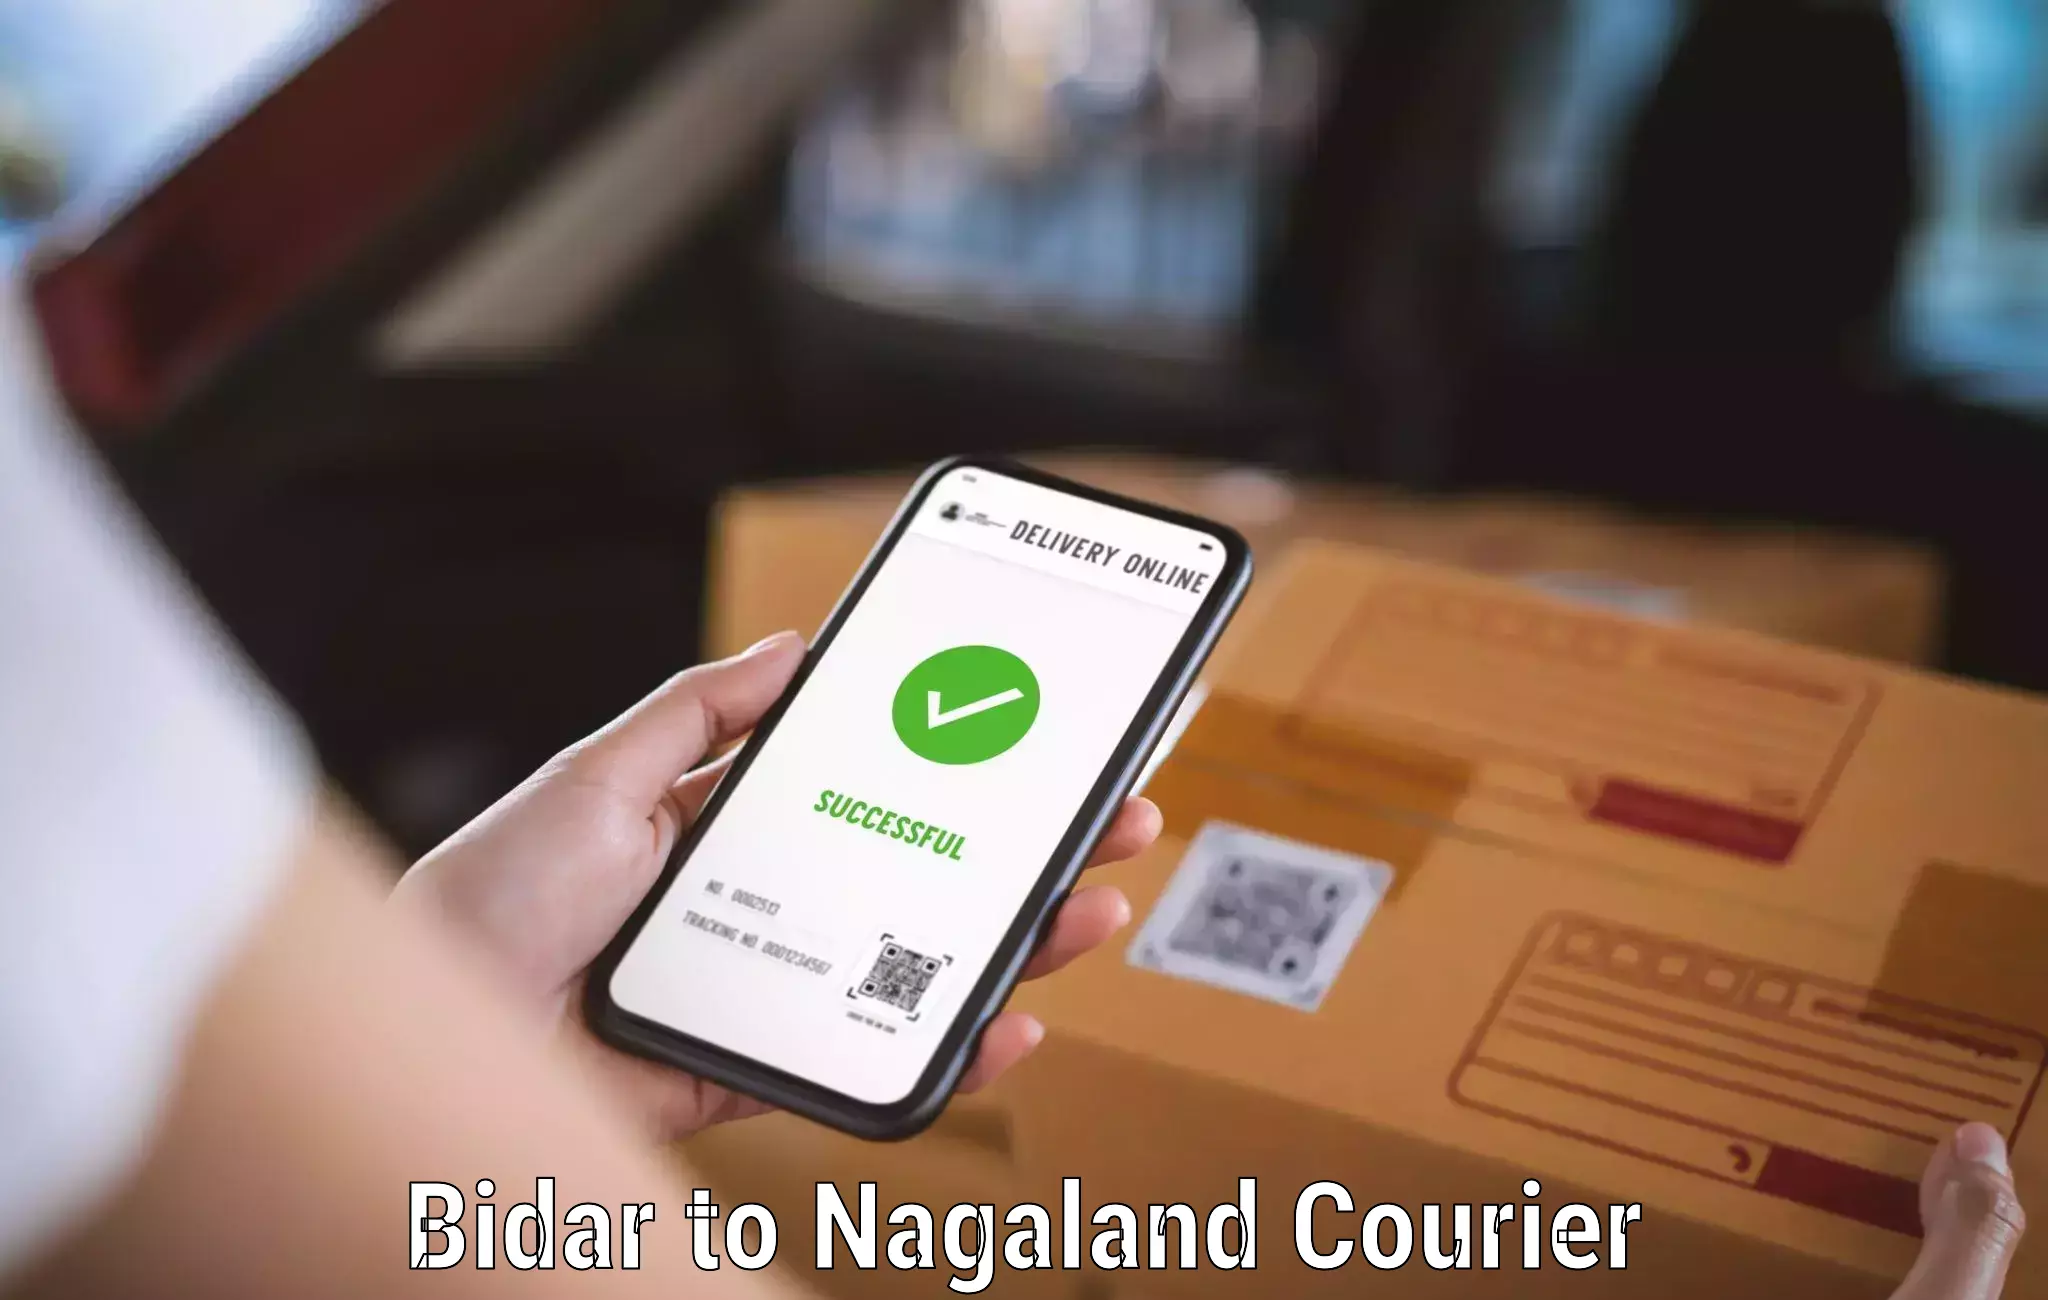 Courier service partnerships Bidar to Nagaland